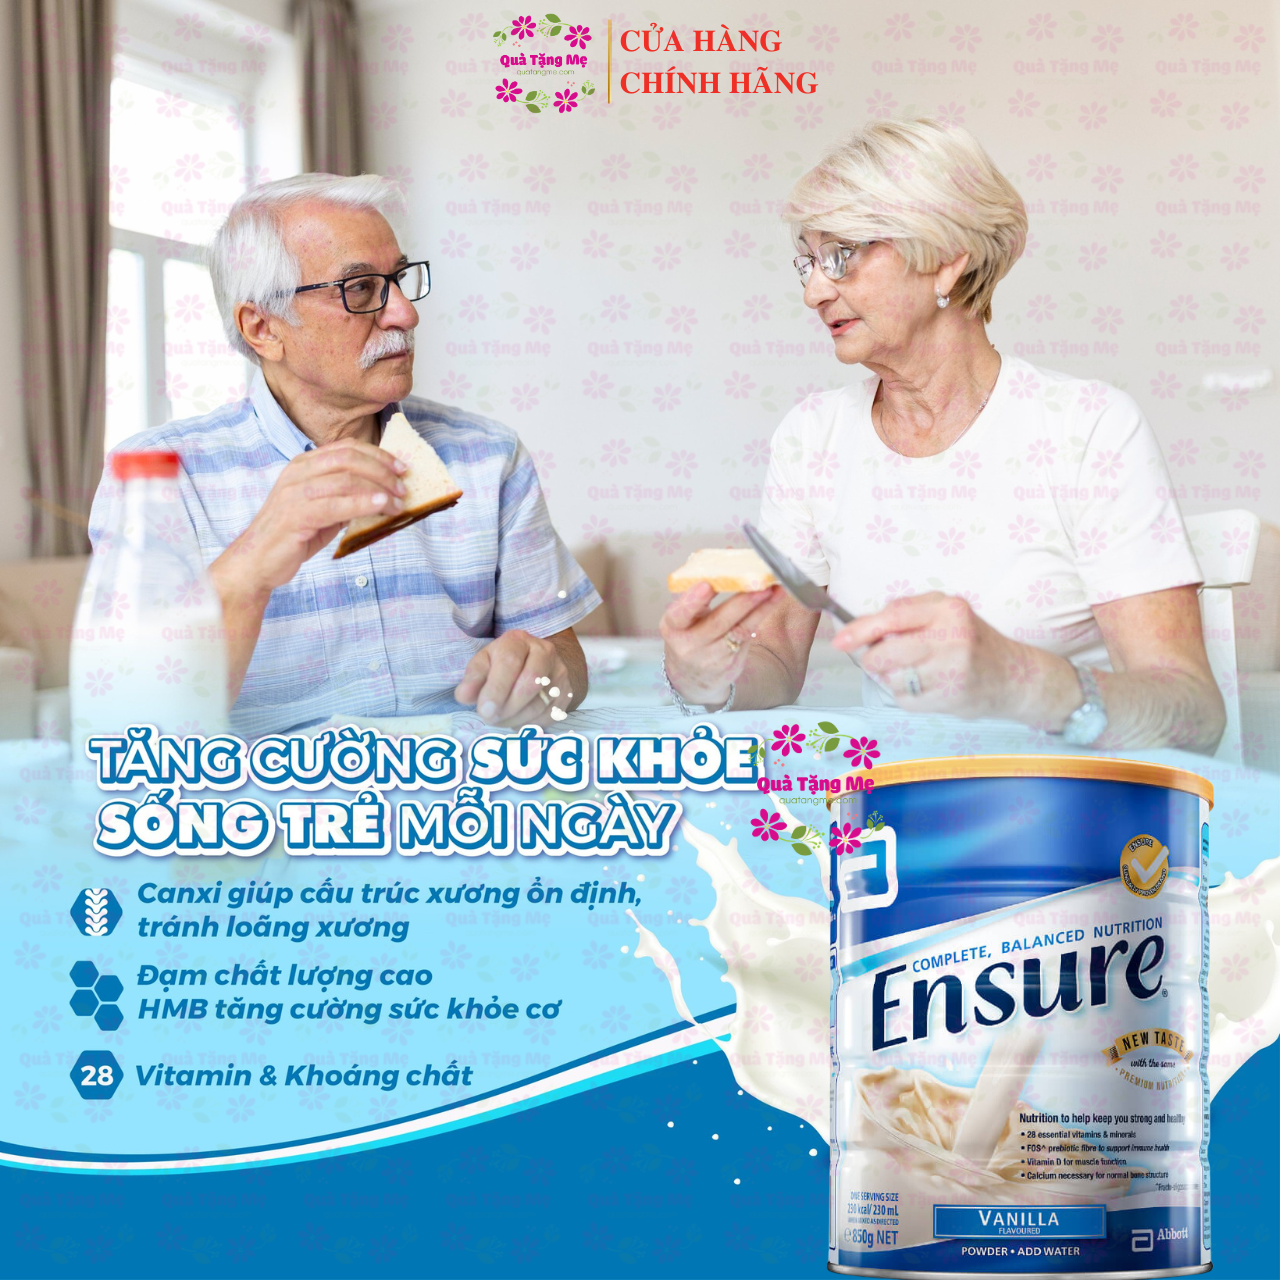 Sữa Ensure Úc hồi phục sức khỏe cho người già, người ốm yếu, suy dinh dưỡng, người sau phẫu thuật - QuaTangMe Extaste